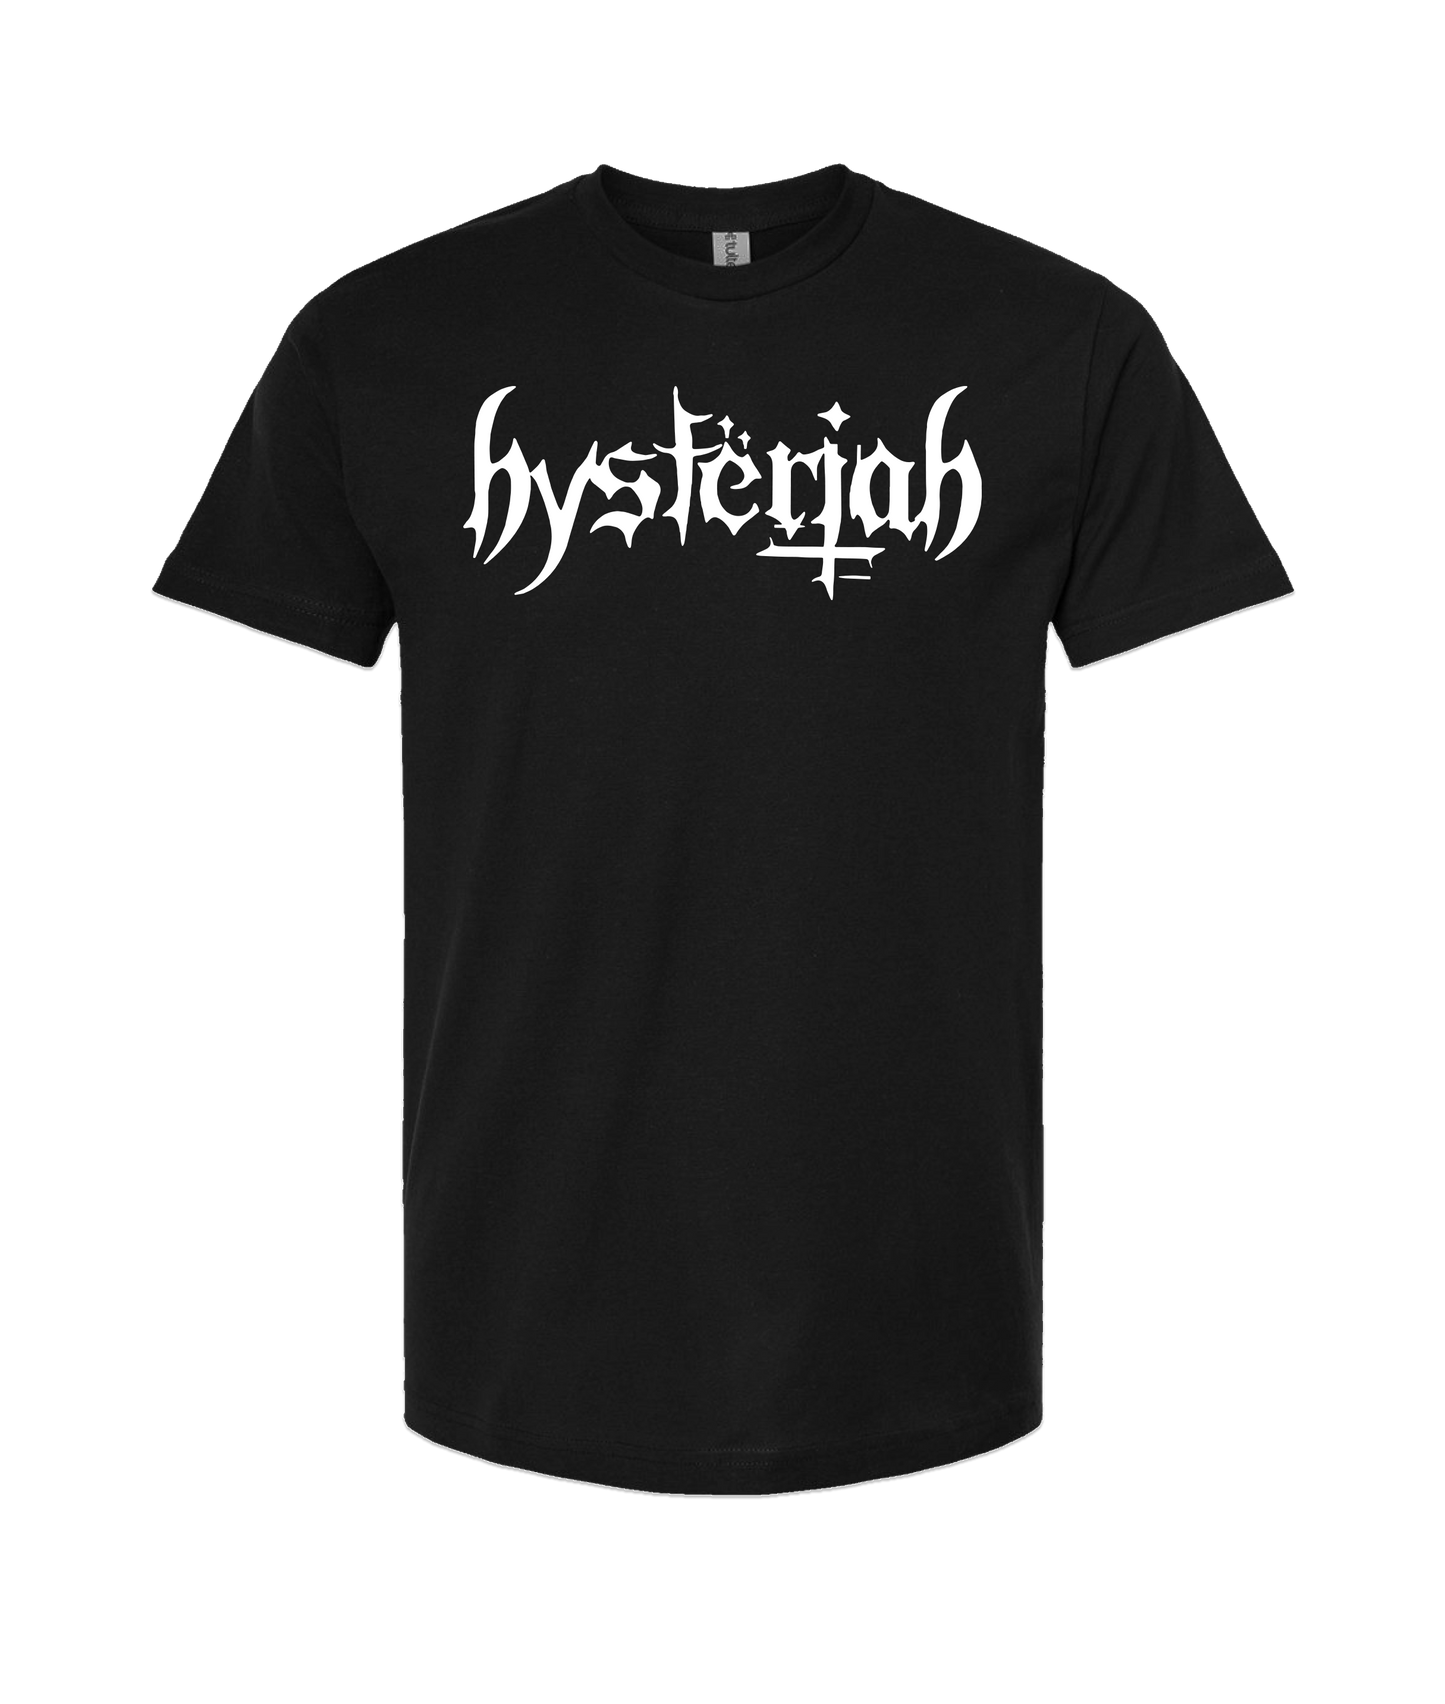 HYSTERIAH - Logo 1 - Black T Shirt